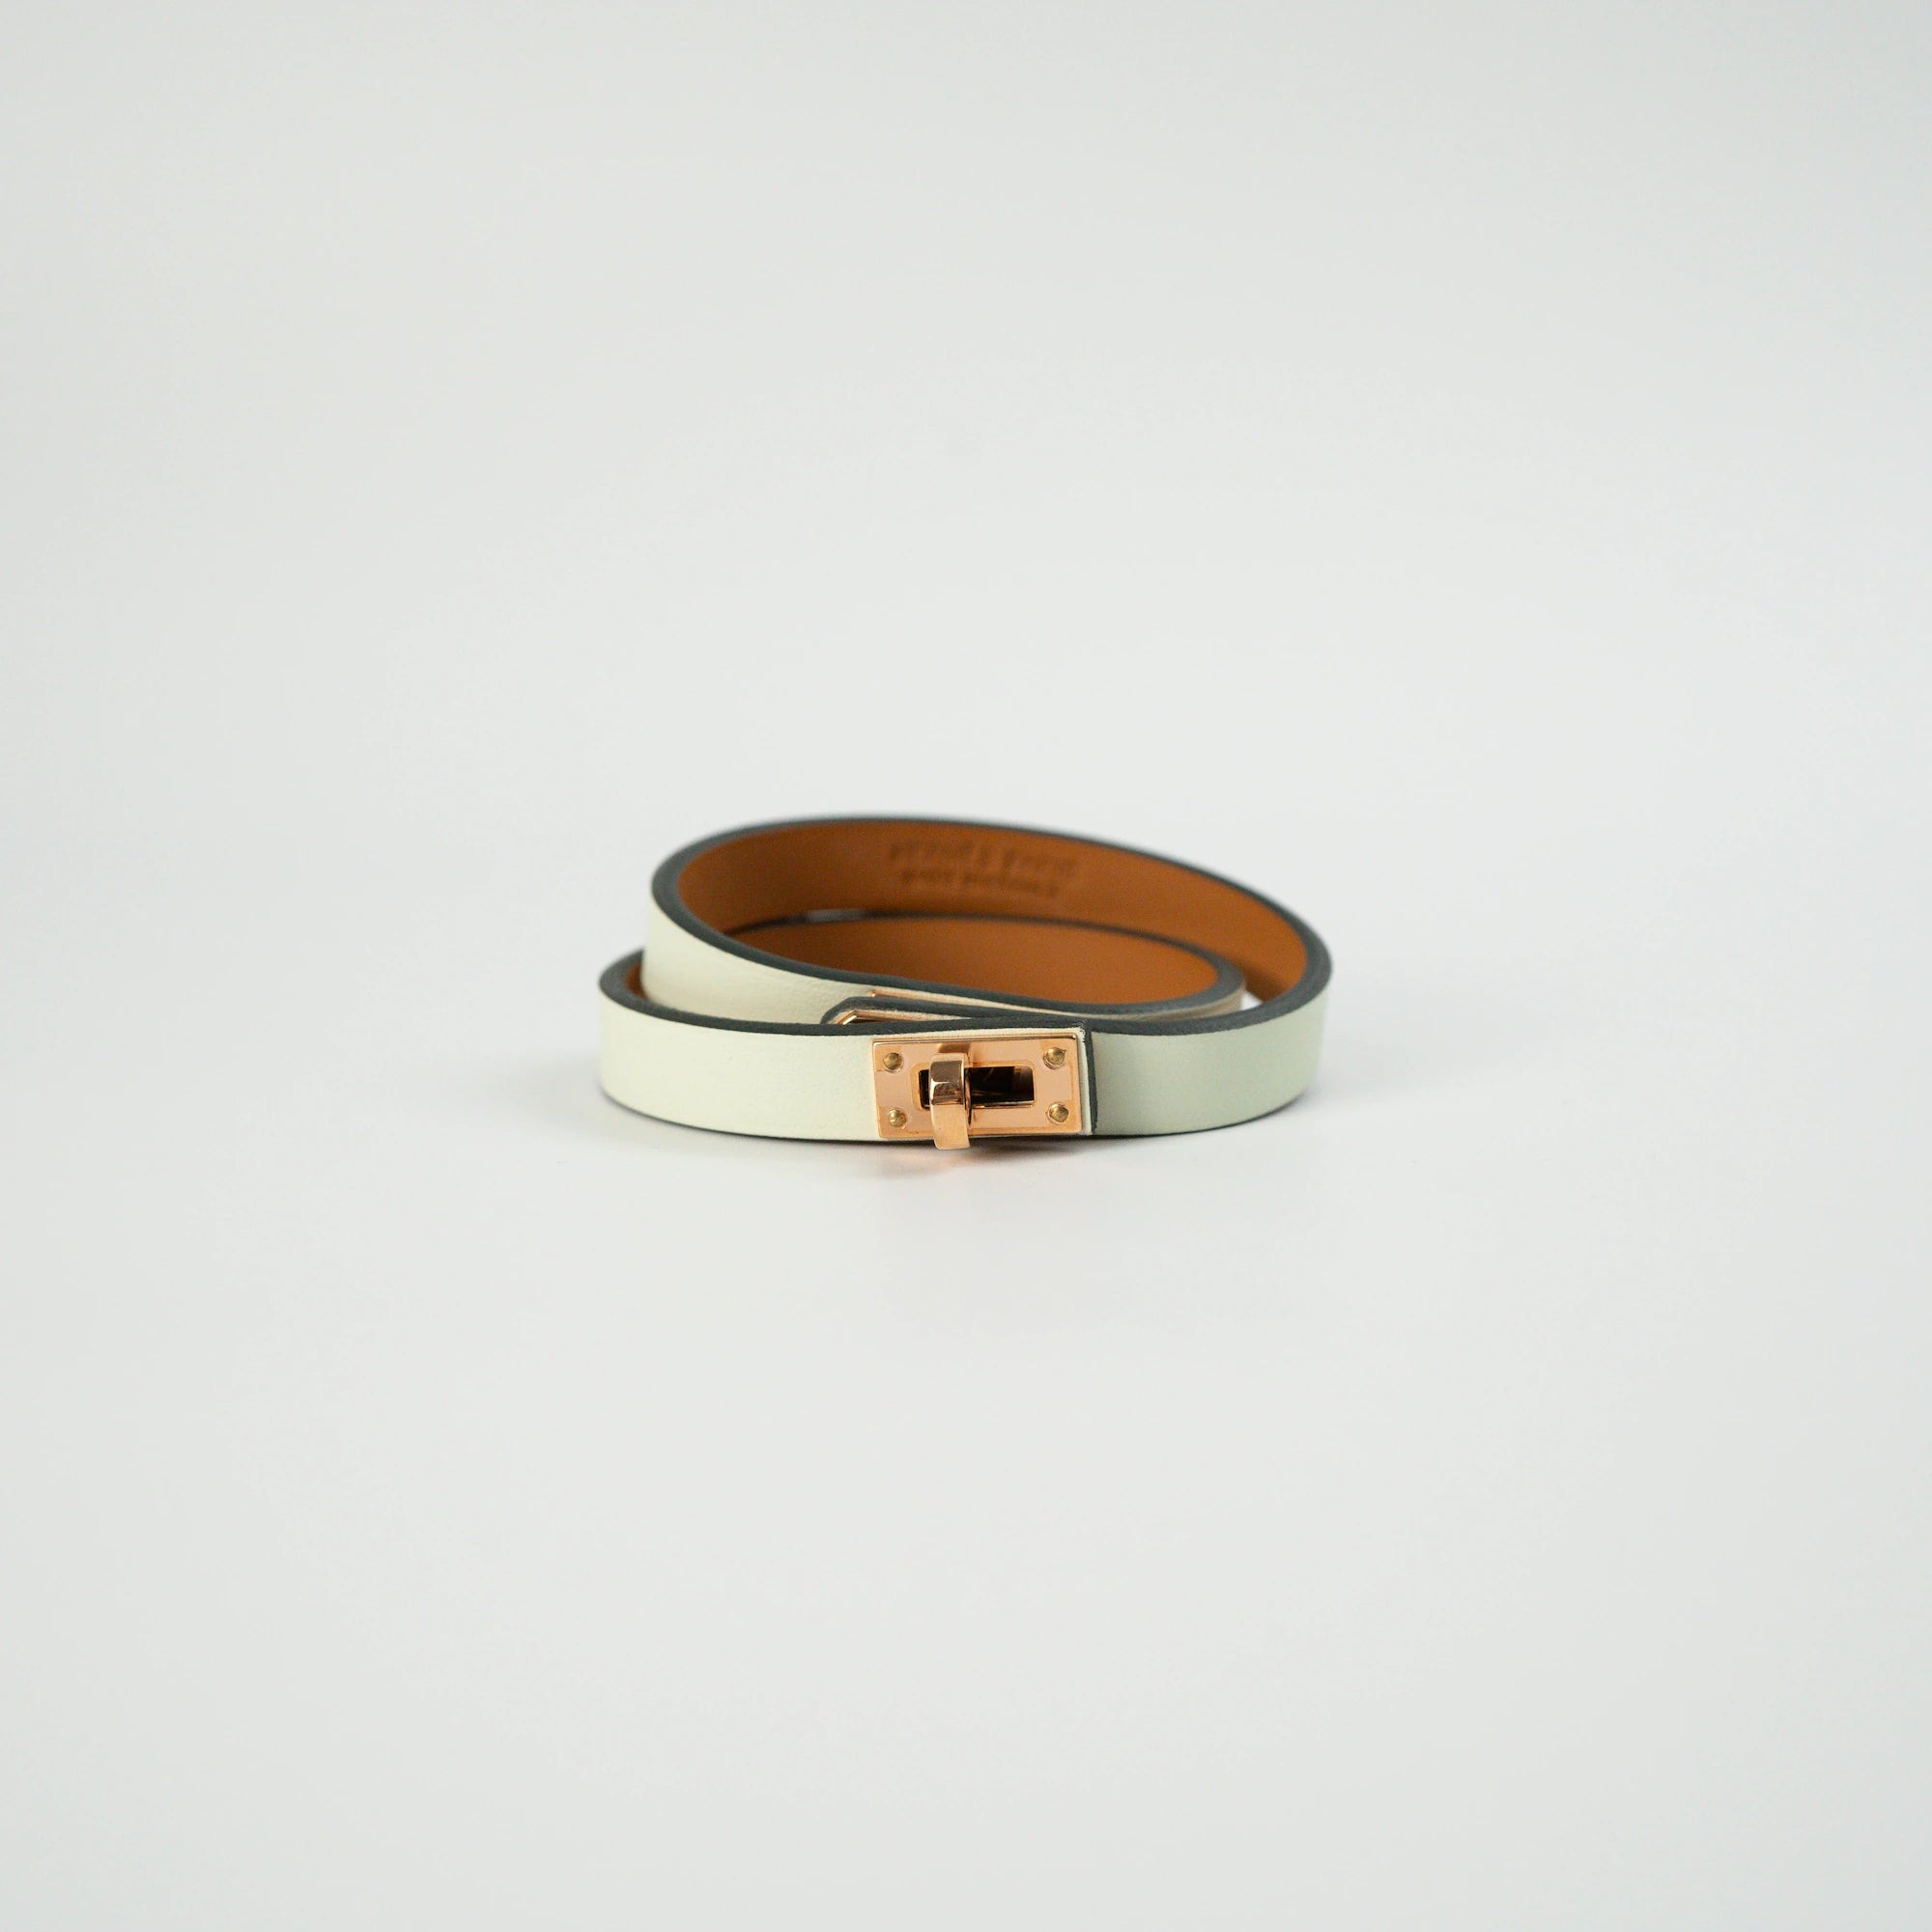 Türkises Leder-Armband "Mini Kelly Double Tour" von Hermès mit rosegoldenem Verschluss